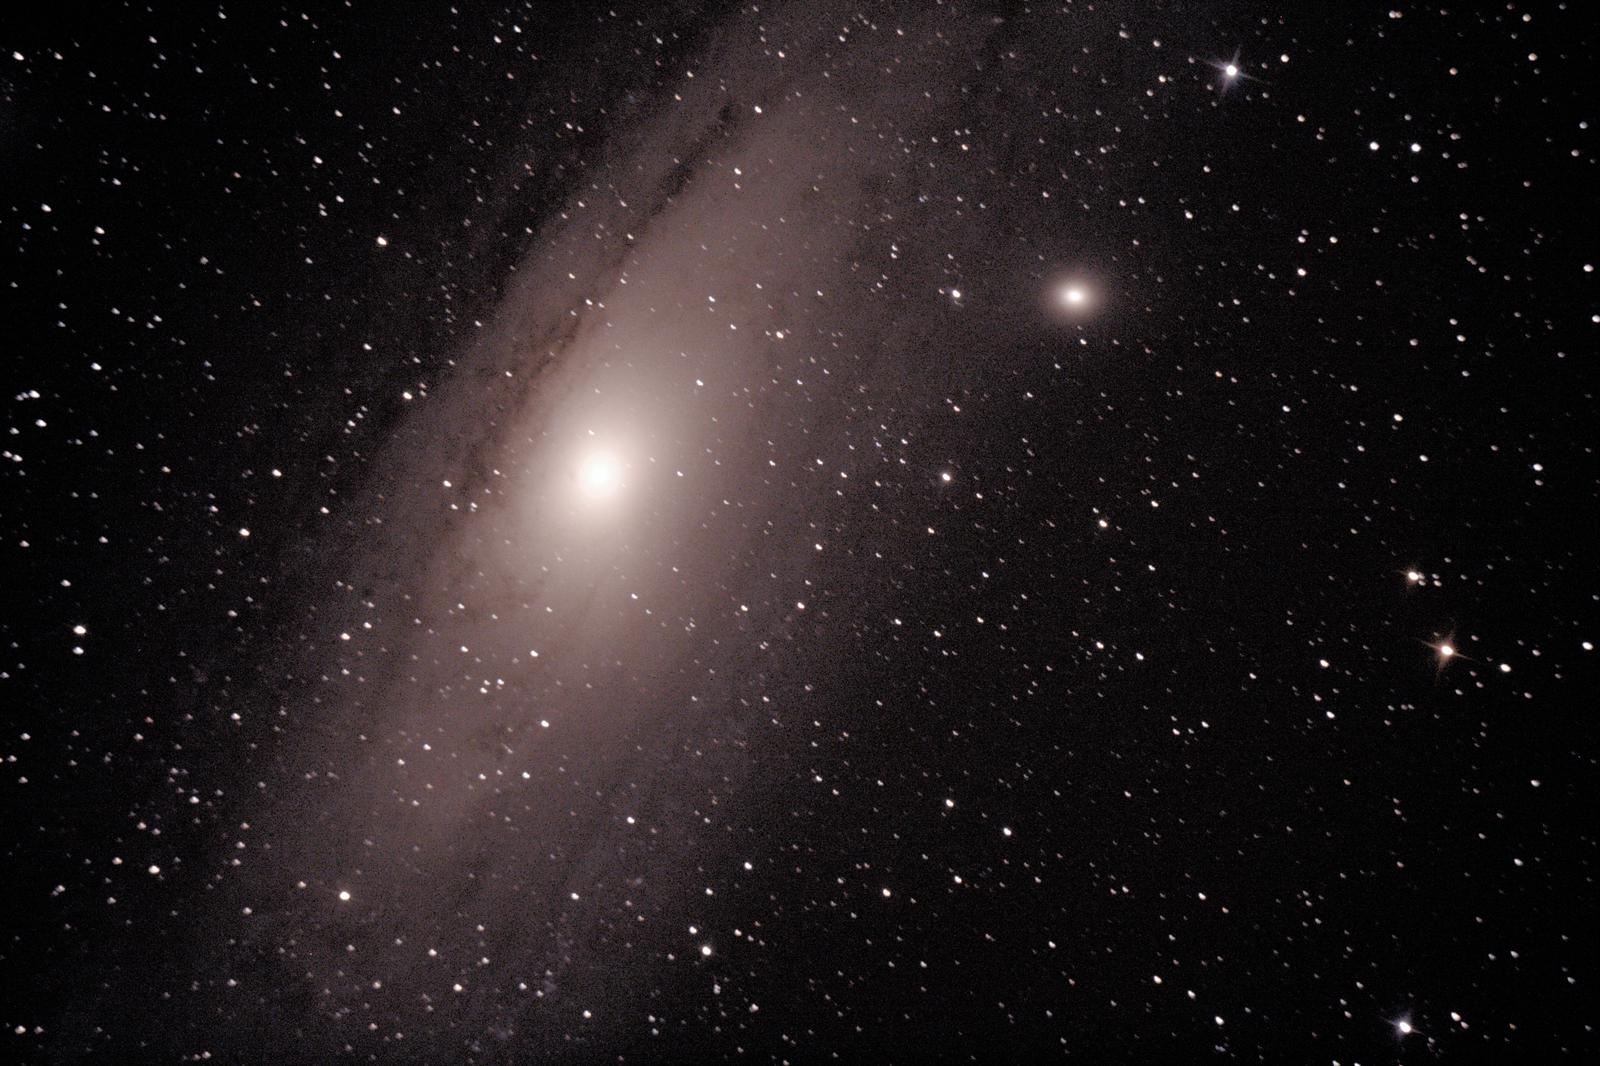 Galaxie d'Andromède- à Saint-Martin (32) - 13 août 2017 - Skywatcher 200/1000 + Canon 1000D défiltré - 1 photo 180sec ISO800 + Ouverture 5 (donnée par le téléscope) + (4 Darks 180sec ISO800) + (30 offsets 1/4000 ISO 800) - image non recoupée - suivi pas très bon